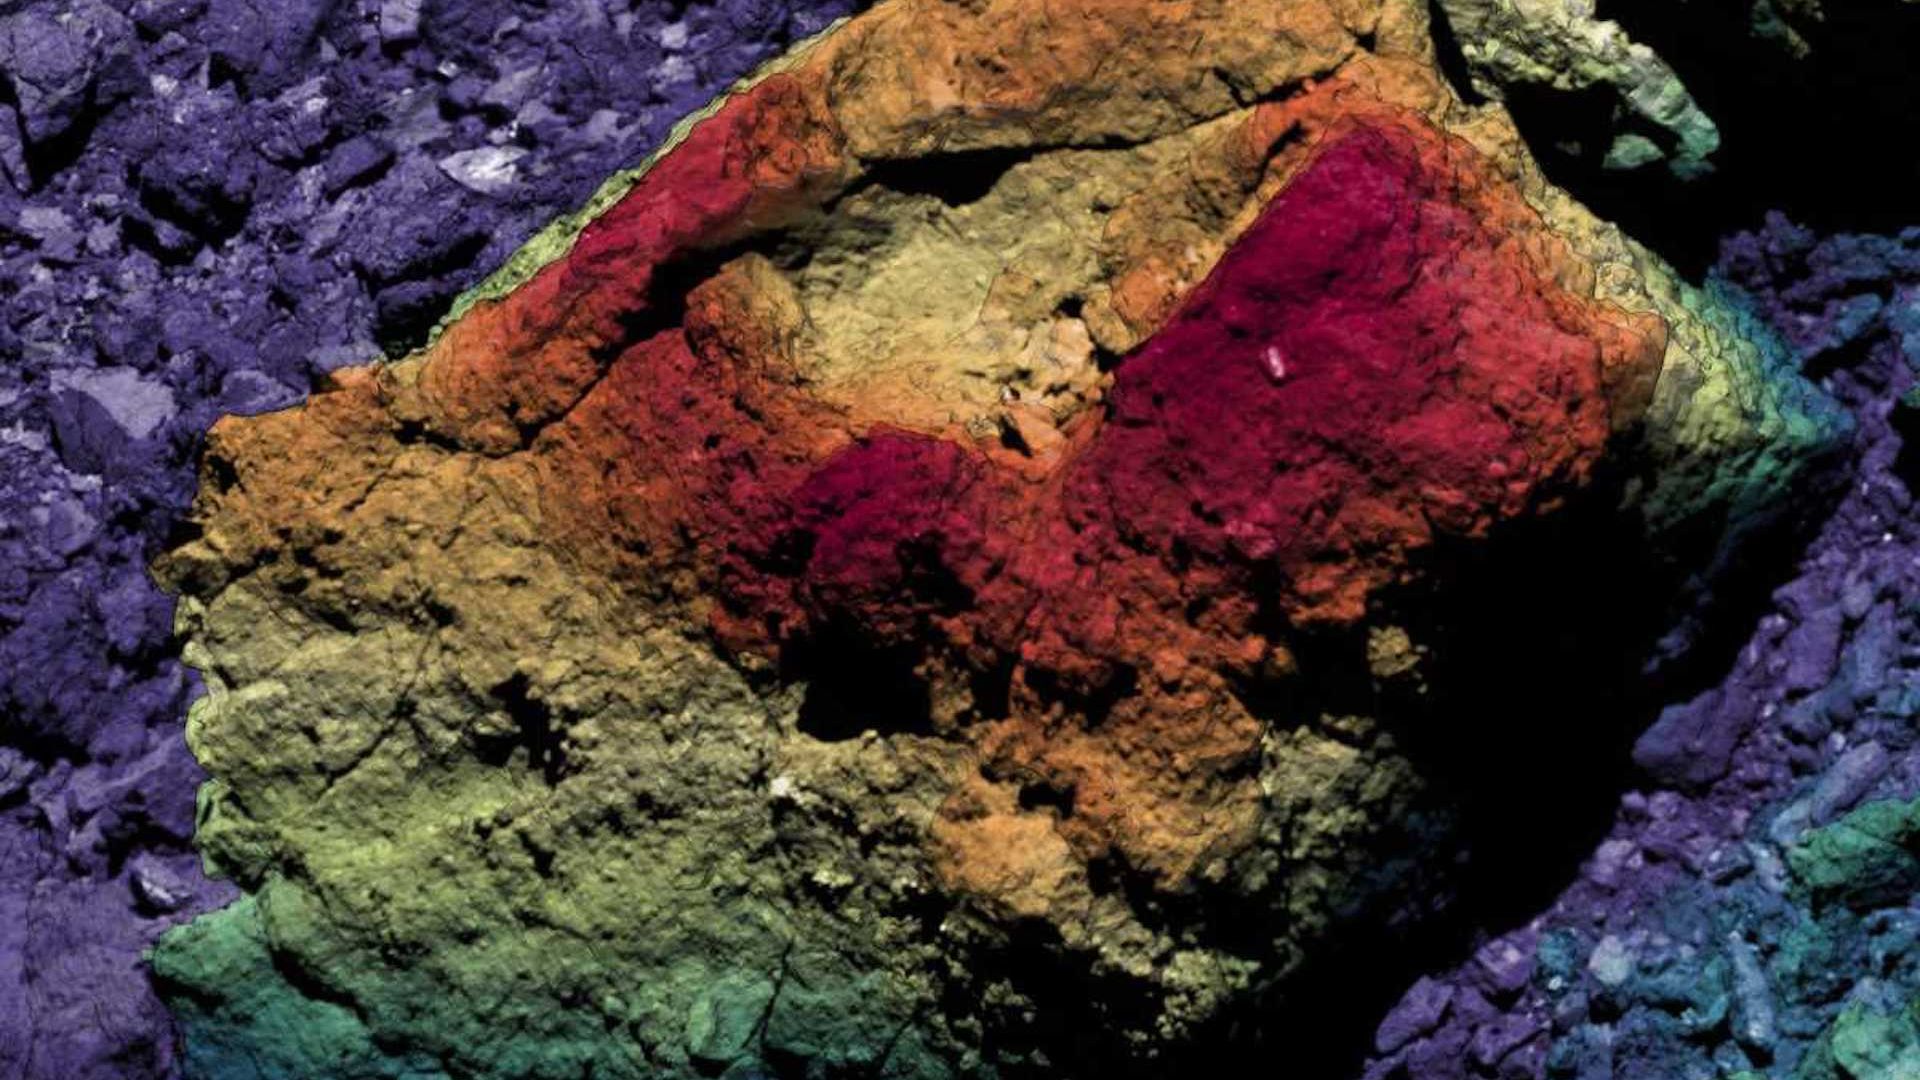 A boulder seen on Bennu pictured in false color